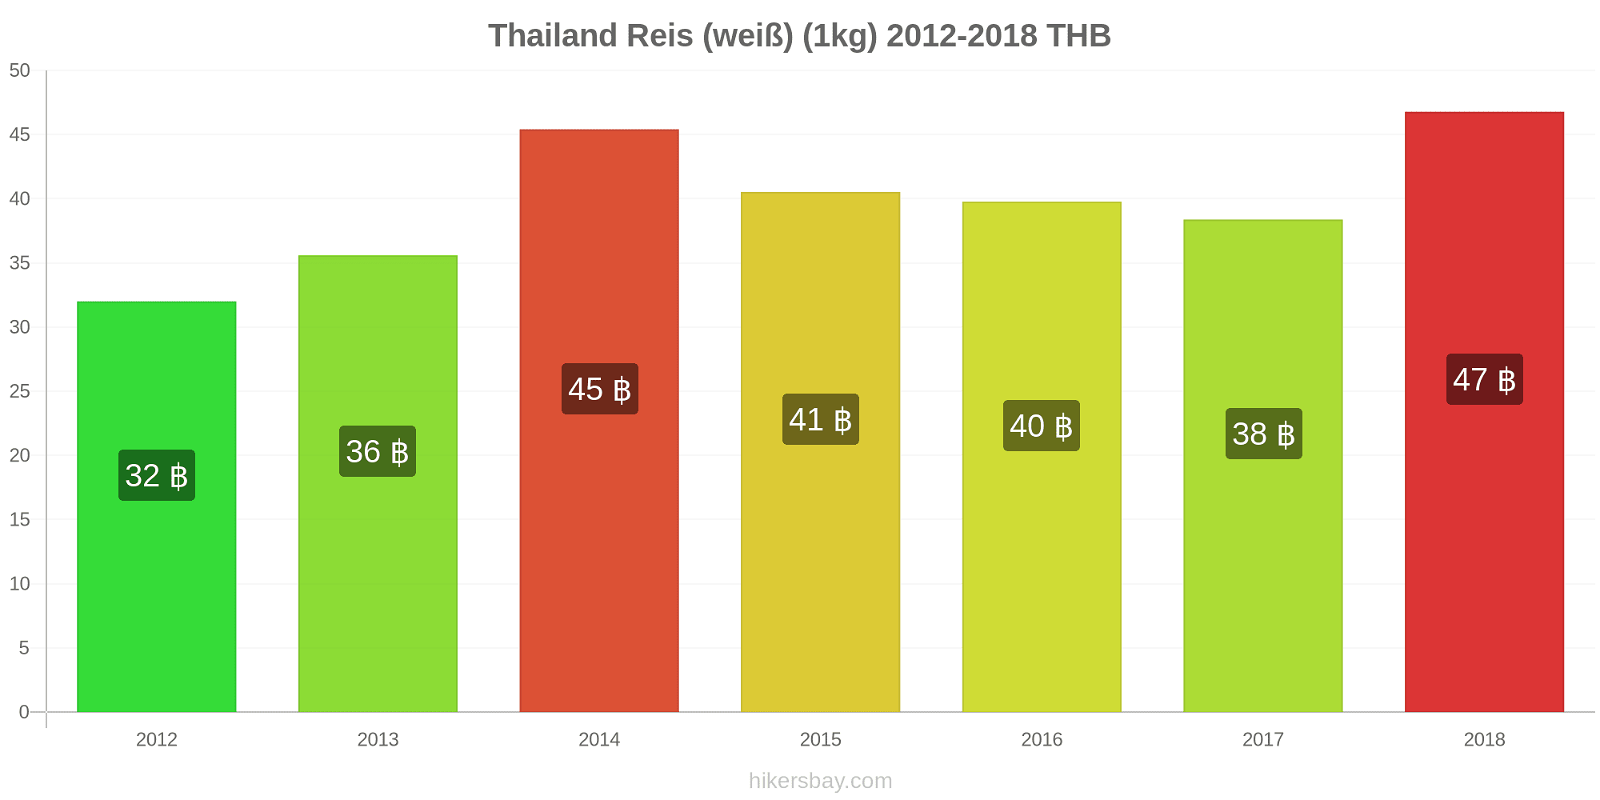 Thailand Preisänderungen Reis (weiß) (1kg) hikersbay.com